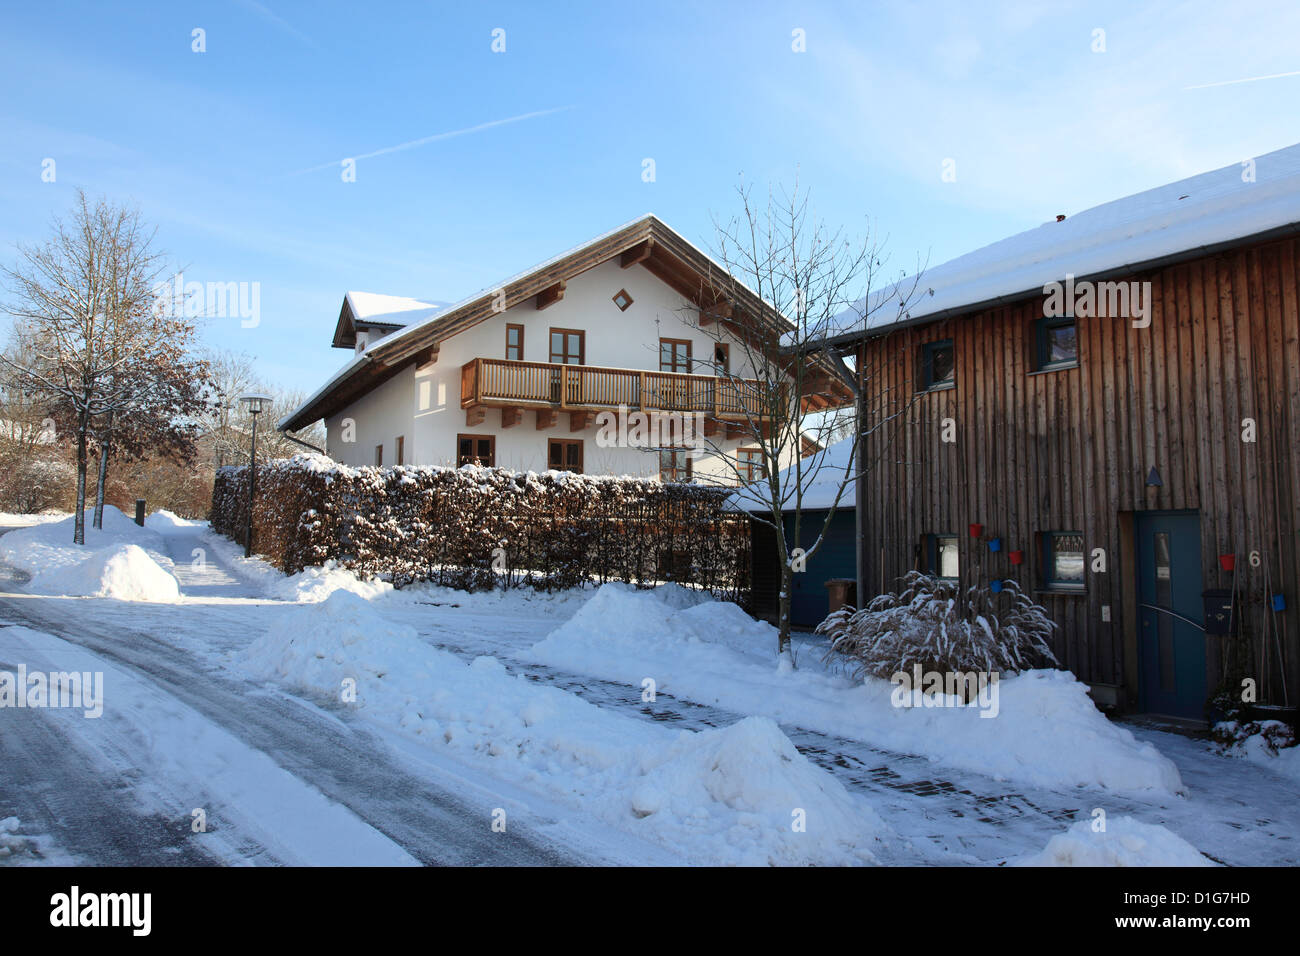 Bayerischen Bauernhaus in Winter, Niederbayern, Deutschland, Europa. Foto: Willy Matheisl Stockfoto